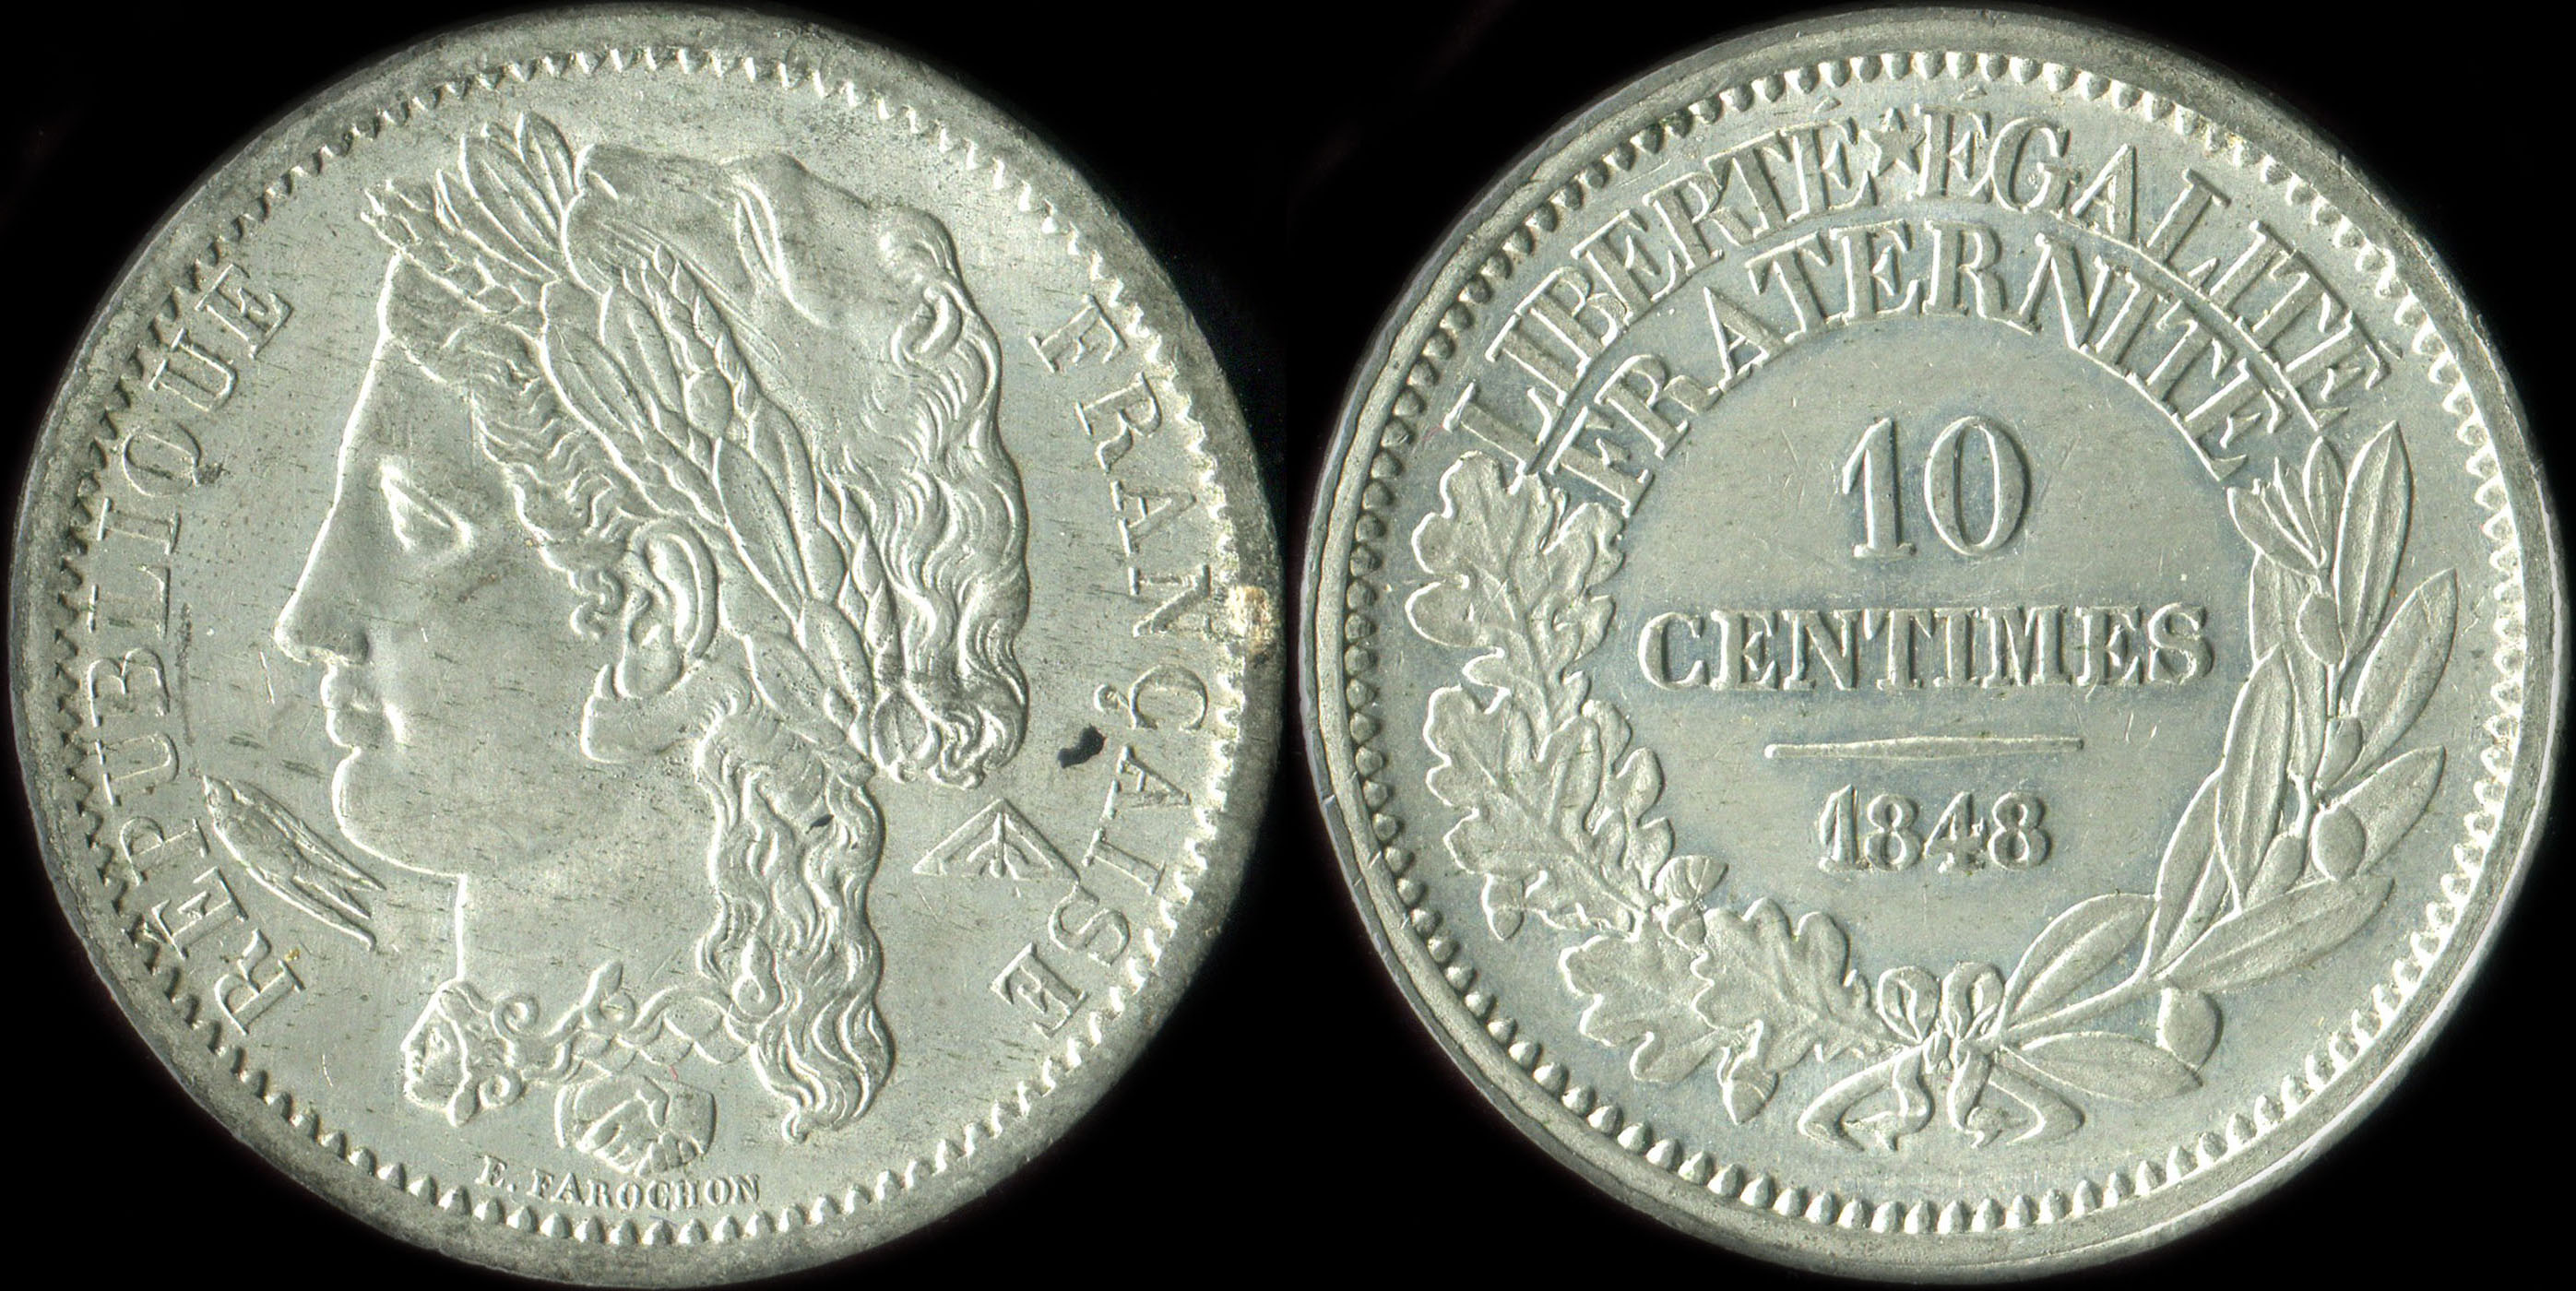 Pice de 10 centimes 1848 - Concours de Farochon - etain